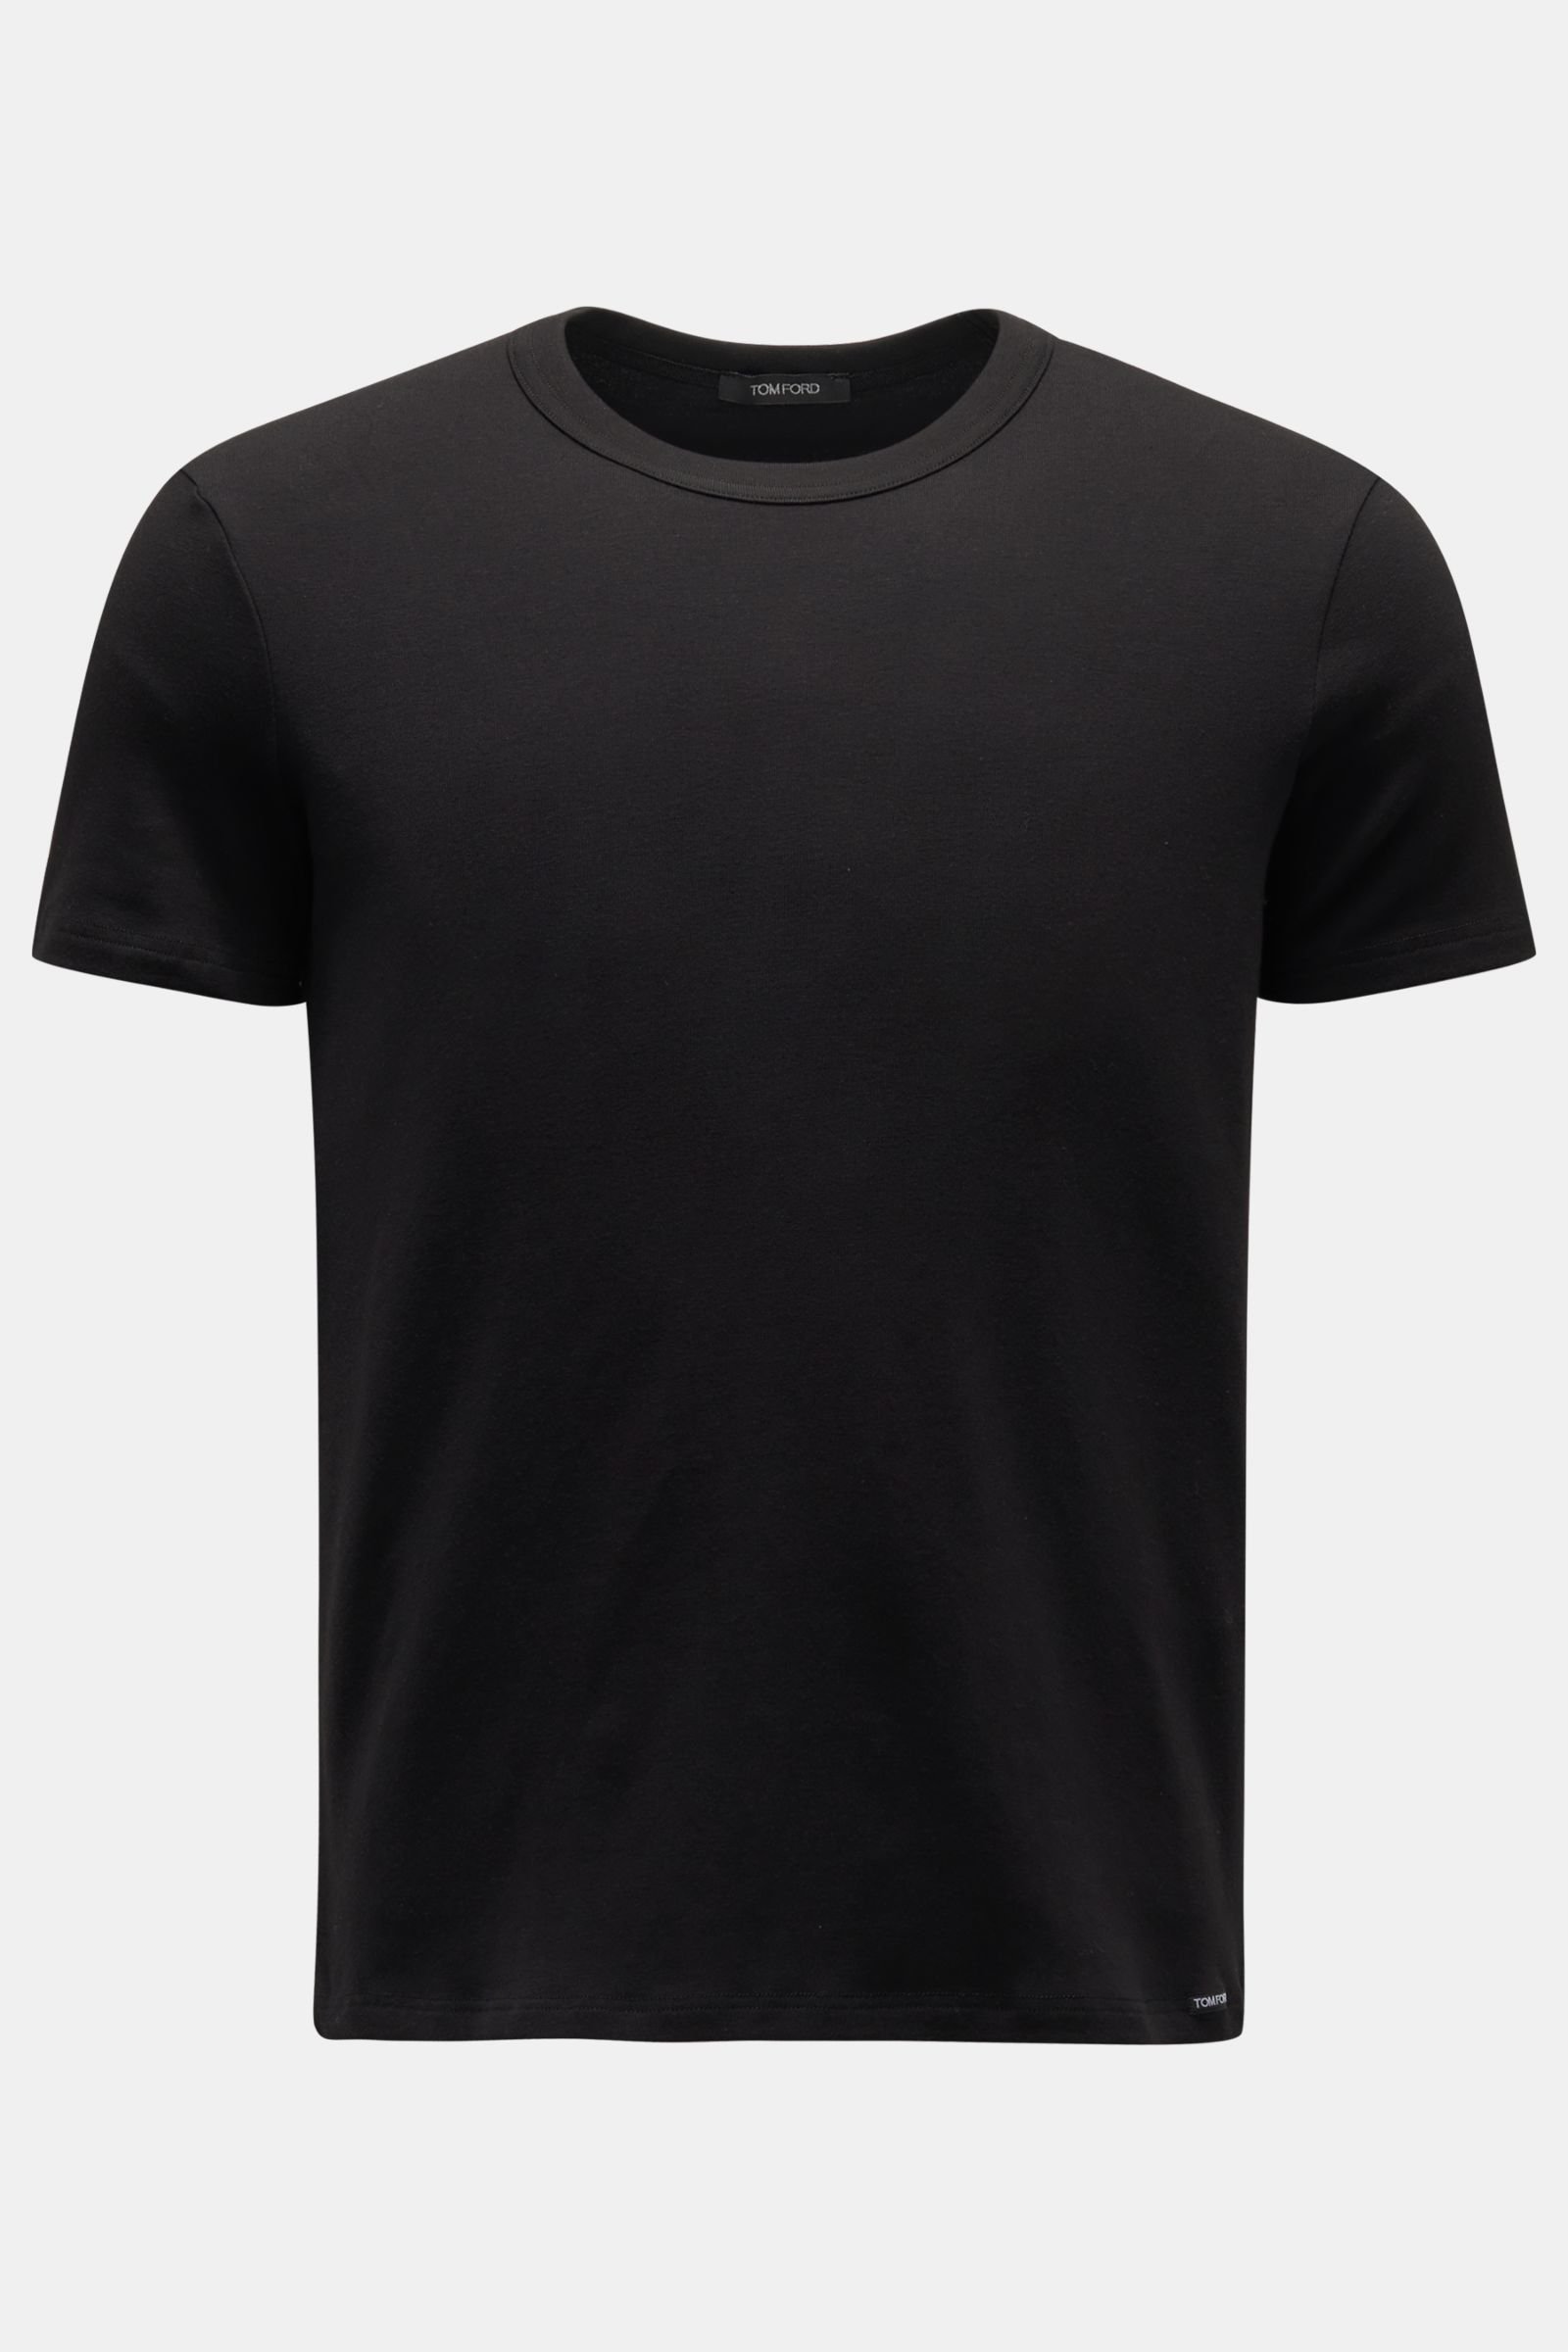 Rundhals-Unterhemd schwarz